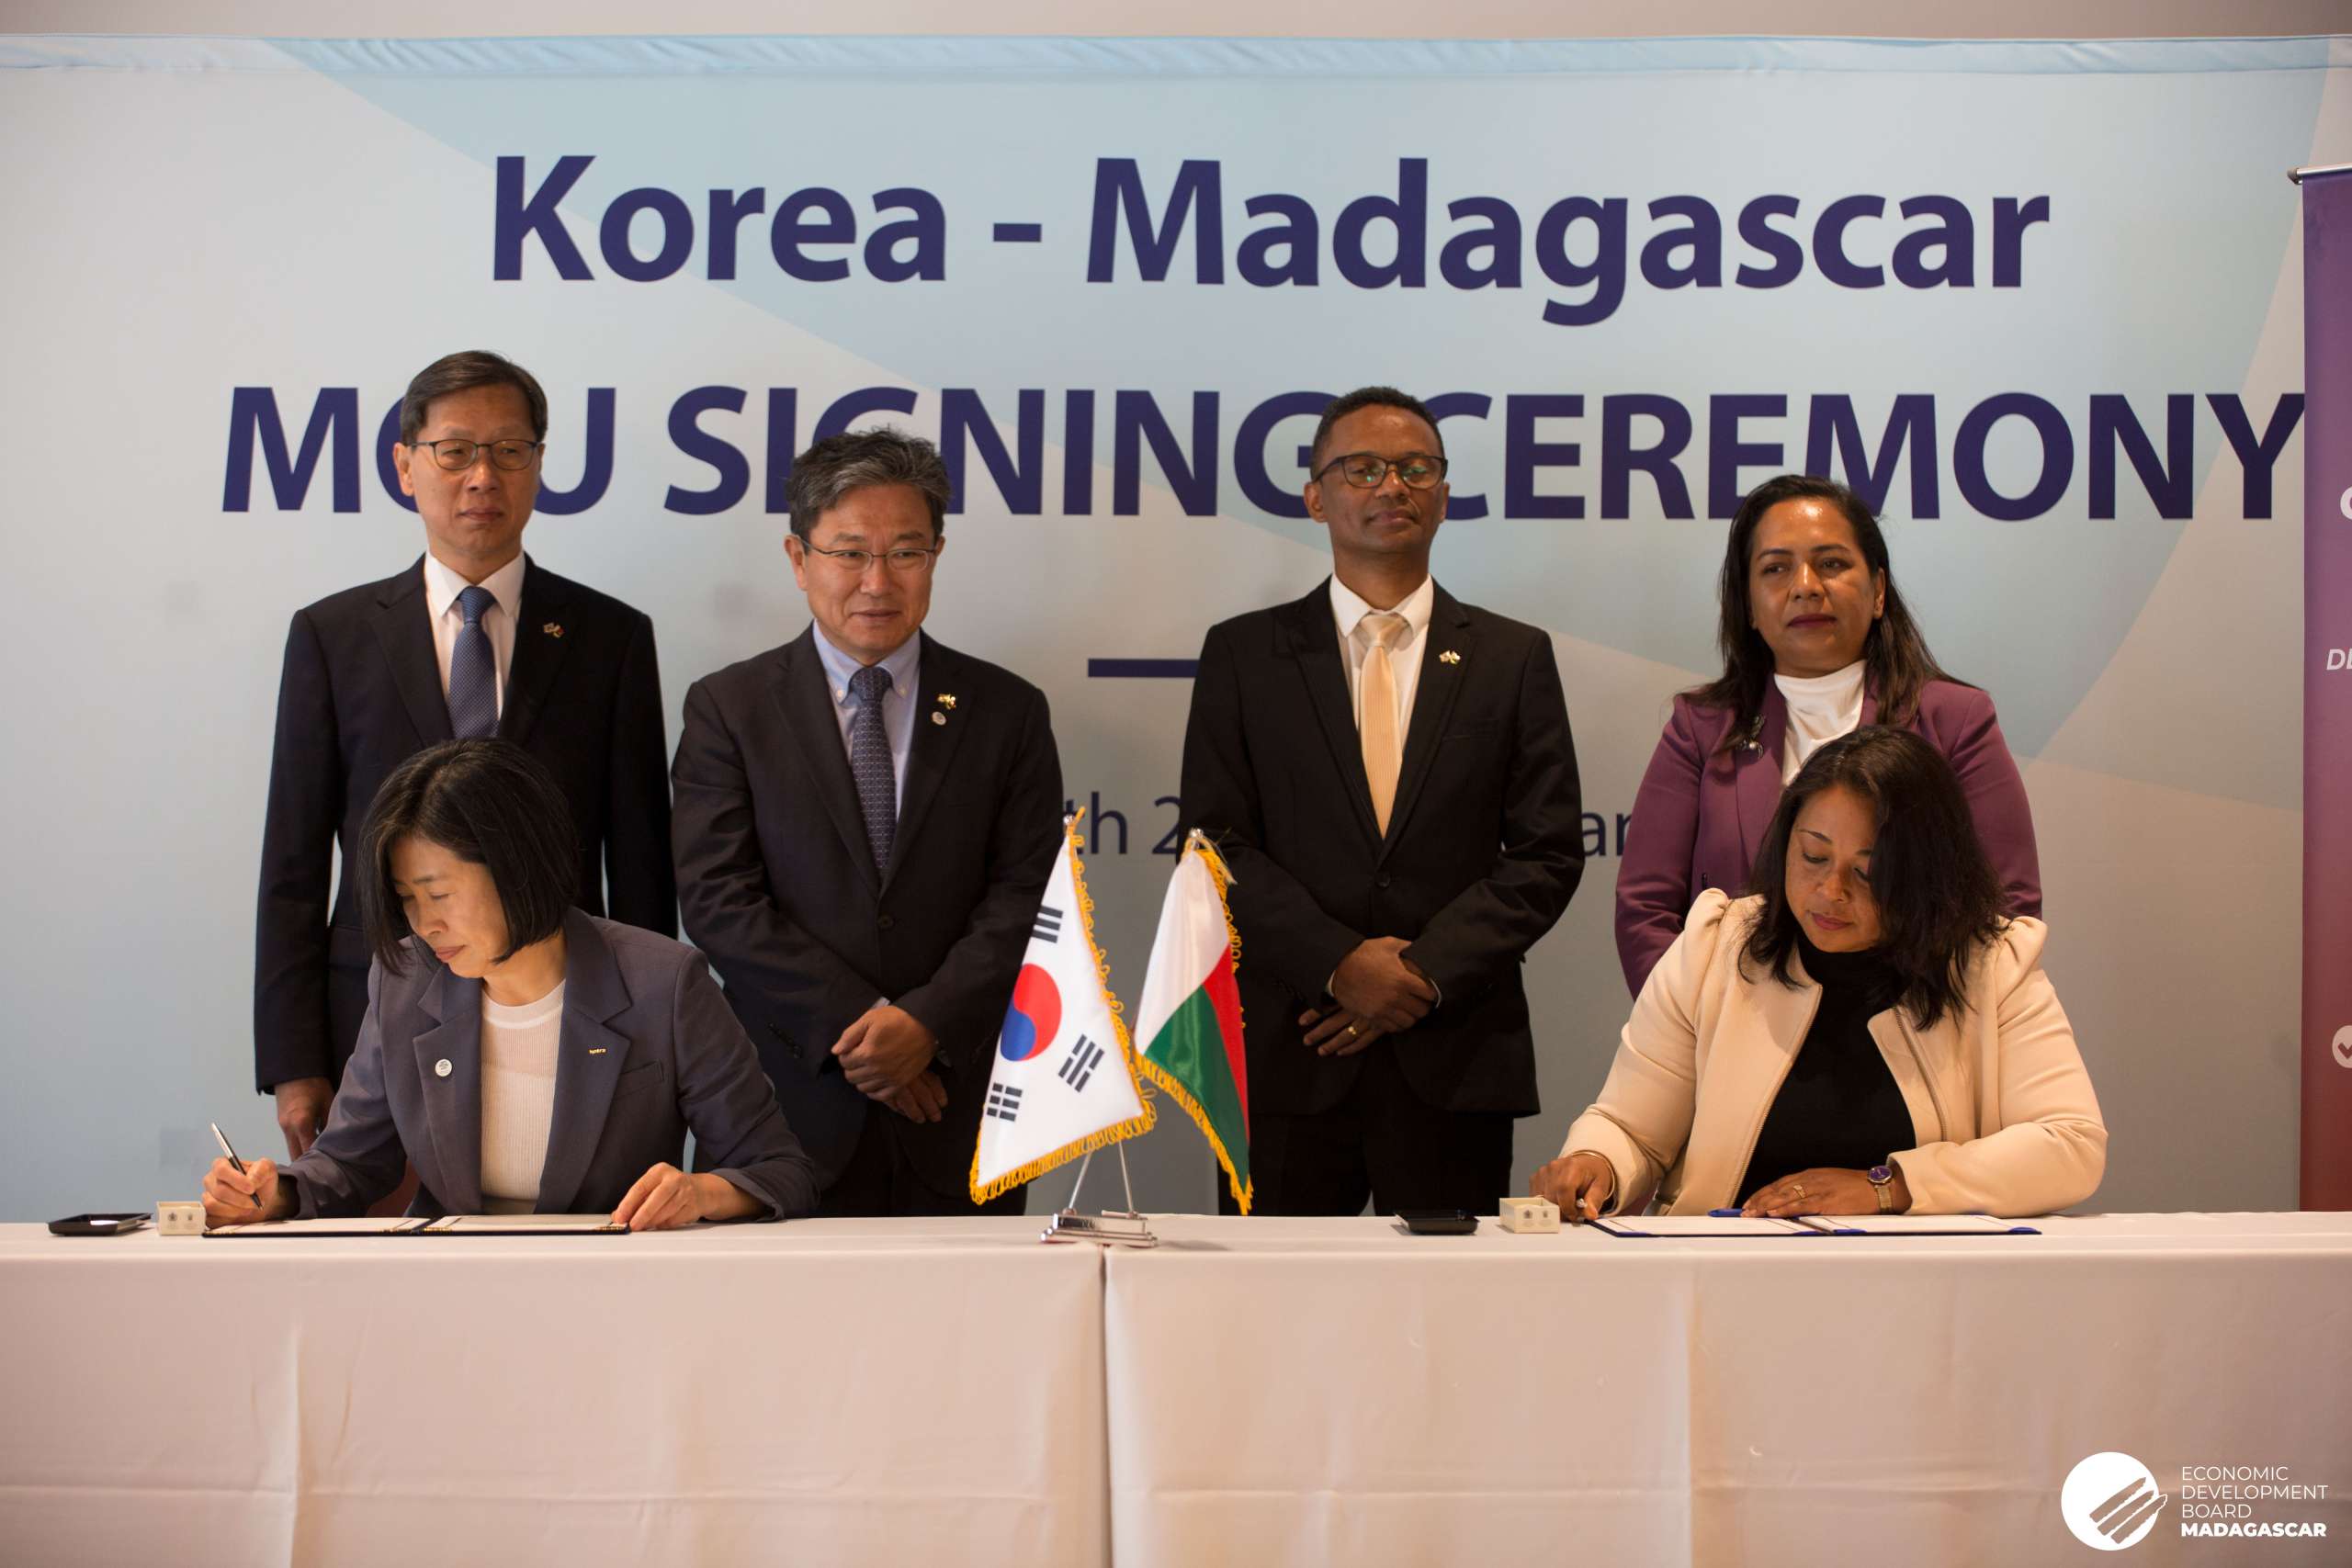 SIGNING CEREMONY OF MEMORANDUM OF UNDERSTANDING TO STRENGTHEN BUSINESS RELATIONS BETWEEN KOREA AND MADAGASCAR